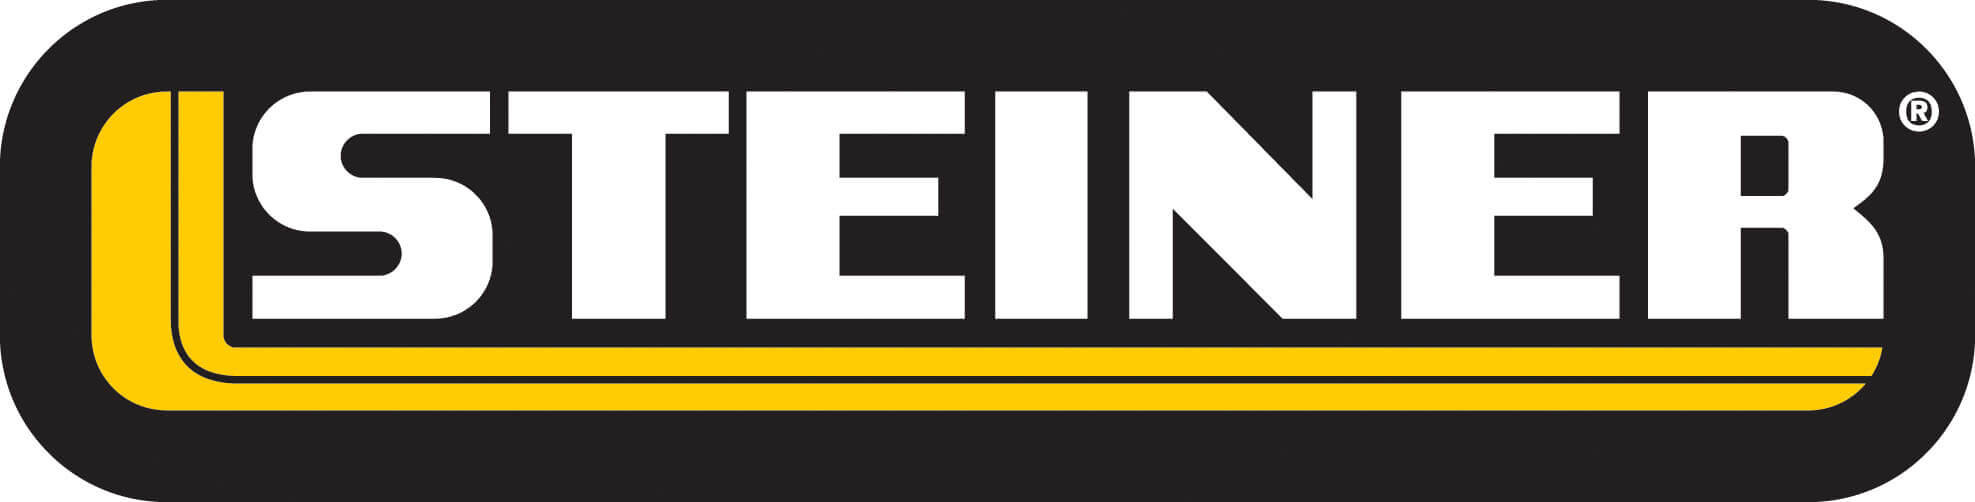 Steiner Logo 002